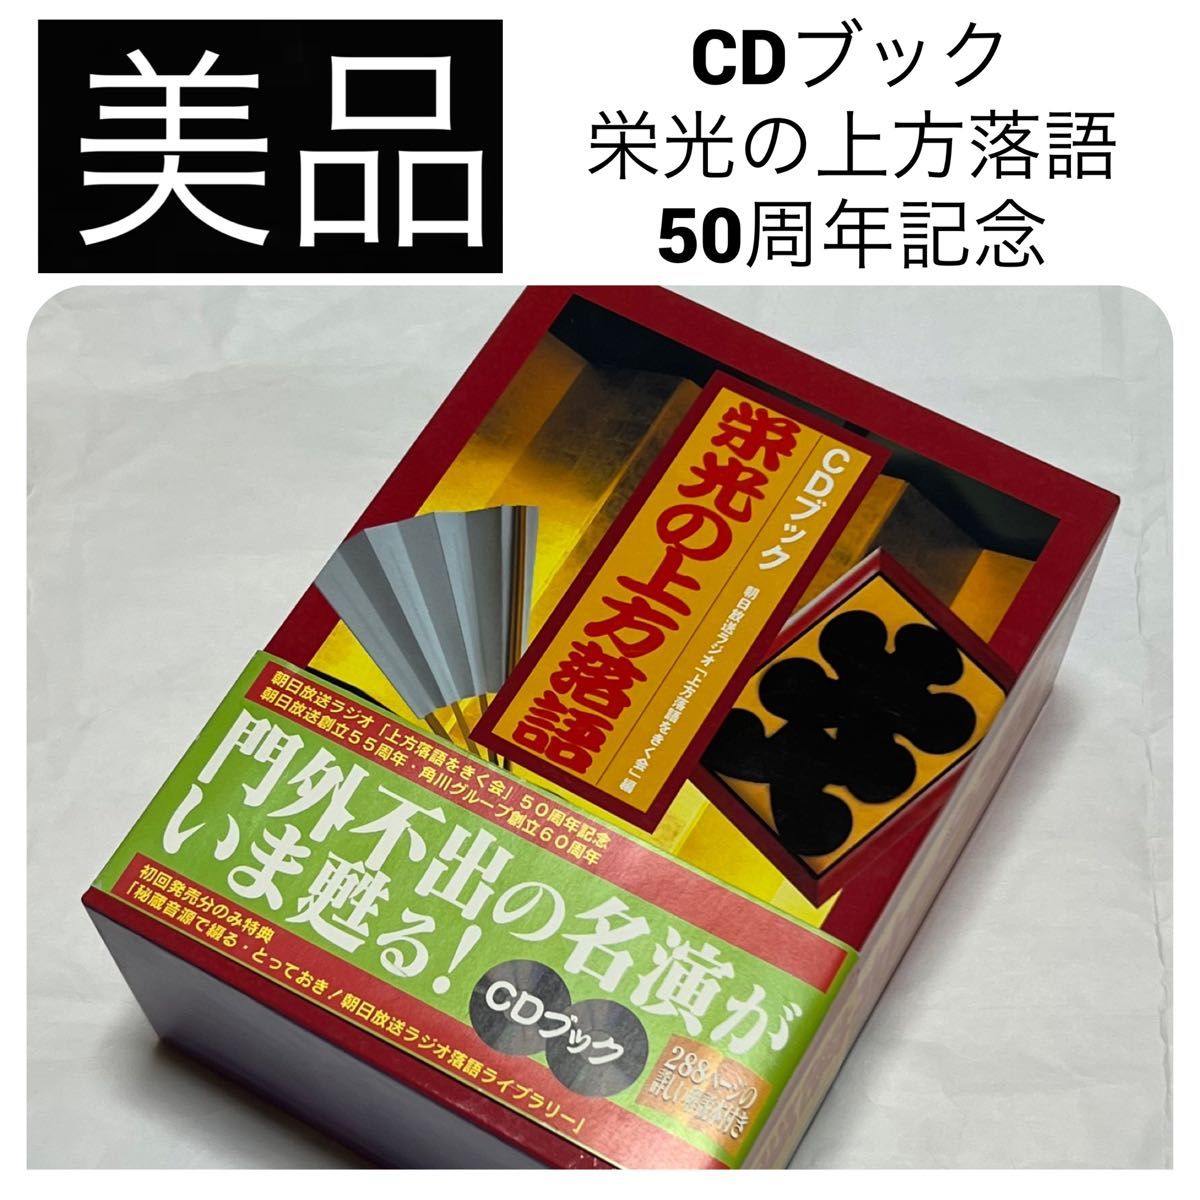 美品 CDブック 栄光の上方落語 朝日放送ラジオ 「上方落語をきく会」50周年記念